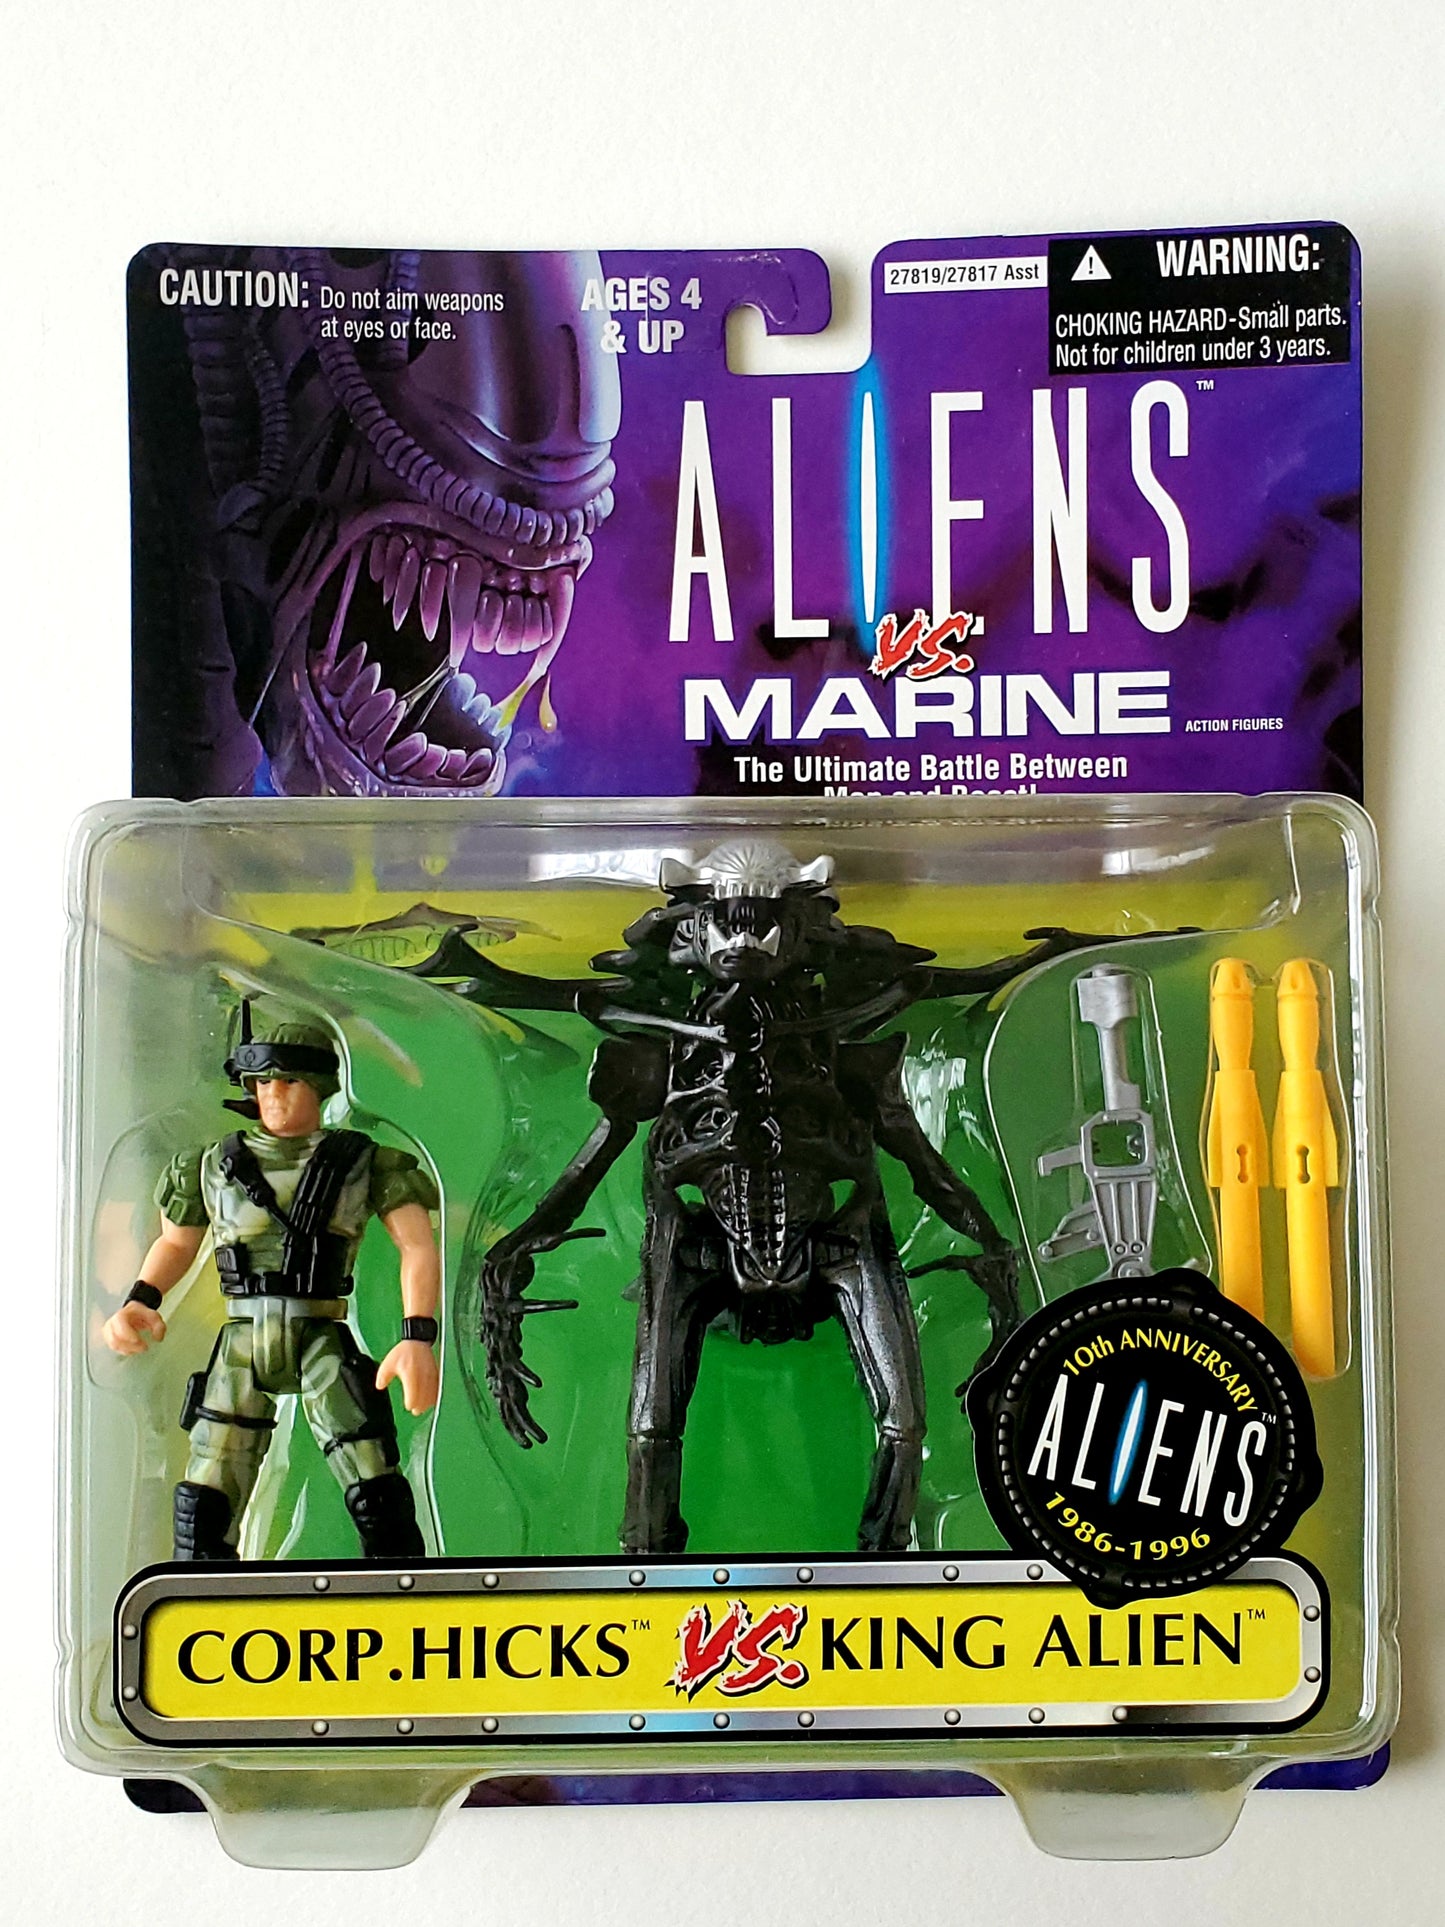 Corp. Hicks vs. King Alien 2-Pack from Aliens vs. Marine